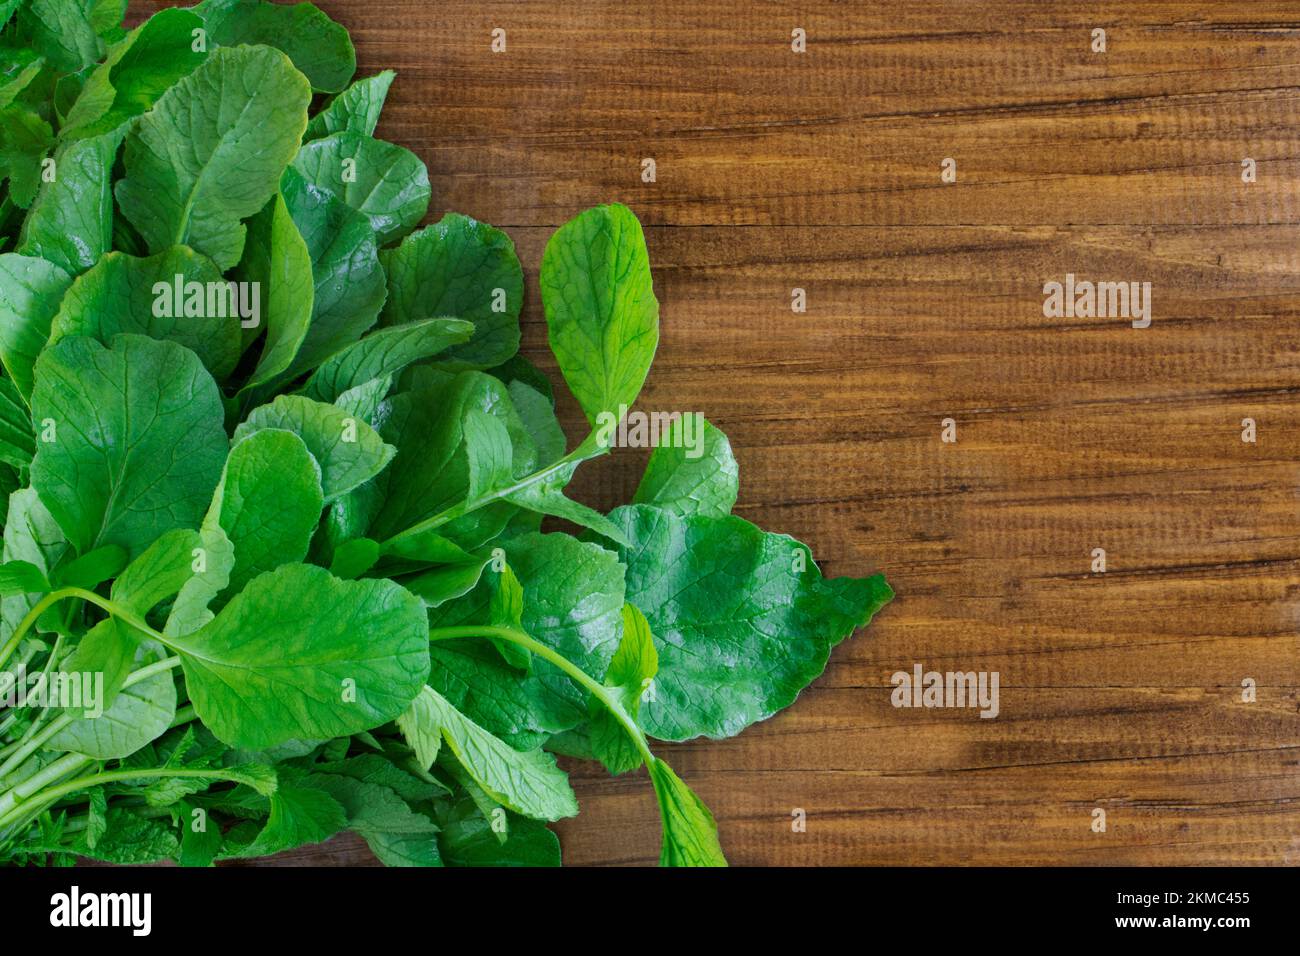 Junge Rettichblätter auf Holzhintergrund. Nützliche Blätter für Salat. Grünzeug zum Kochen. Großartiges Essen. Speicherplatz kopieren Stockfoto